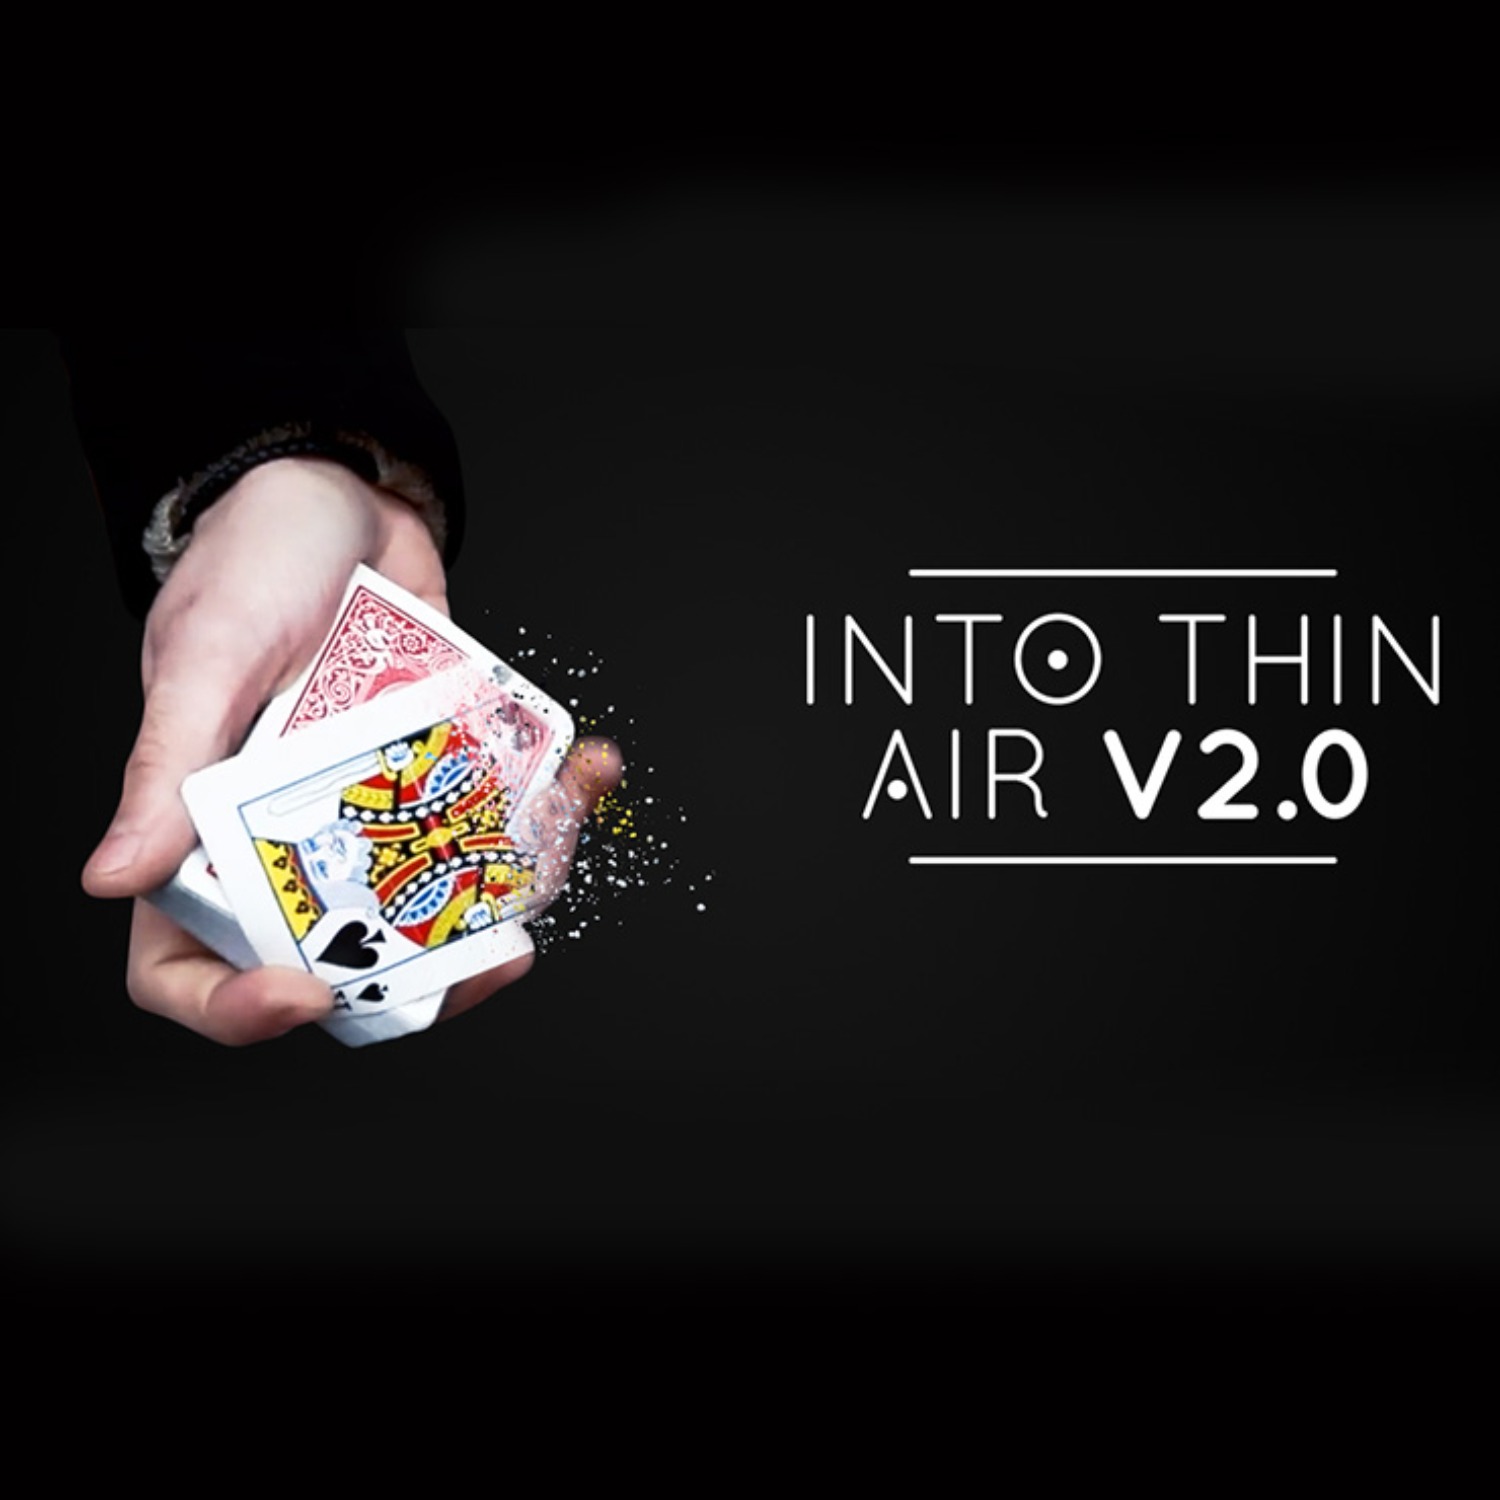 [인투 씬에어]Into Thin Air 2 0 Red DVD and Gimmick by Sultan Orazaly 비쥬얼하게 카드를 없애는 새로운 방법을 배워보십시오.